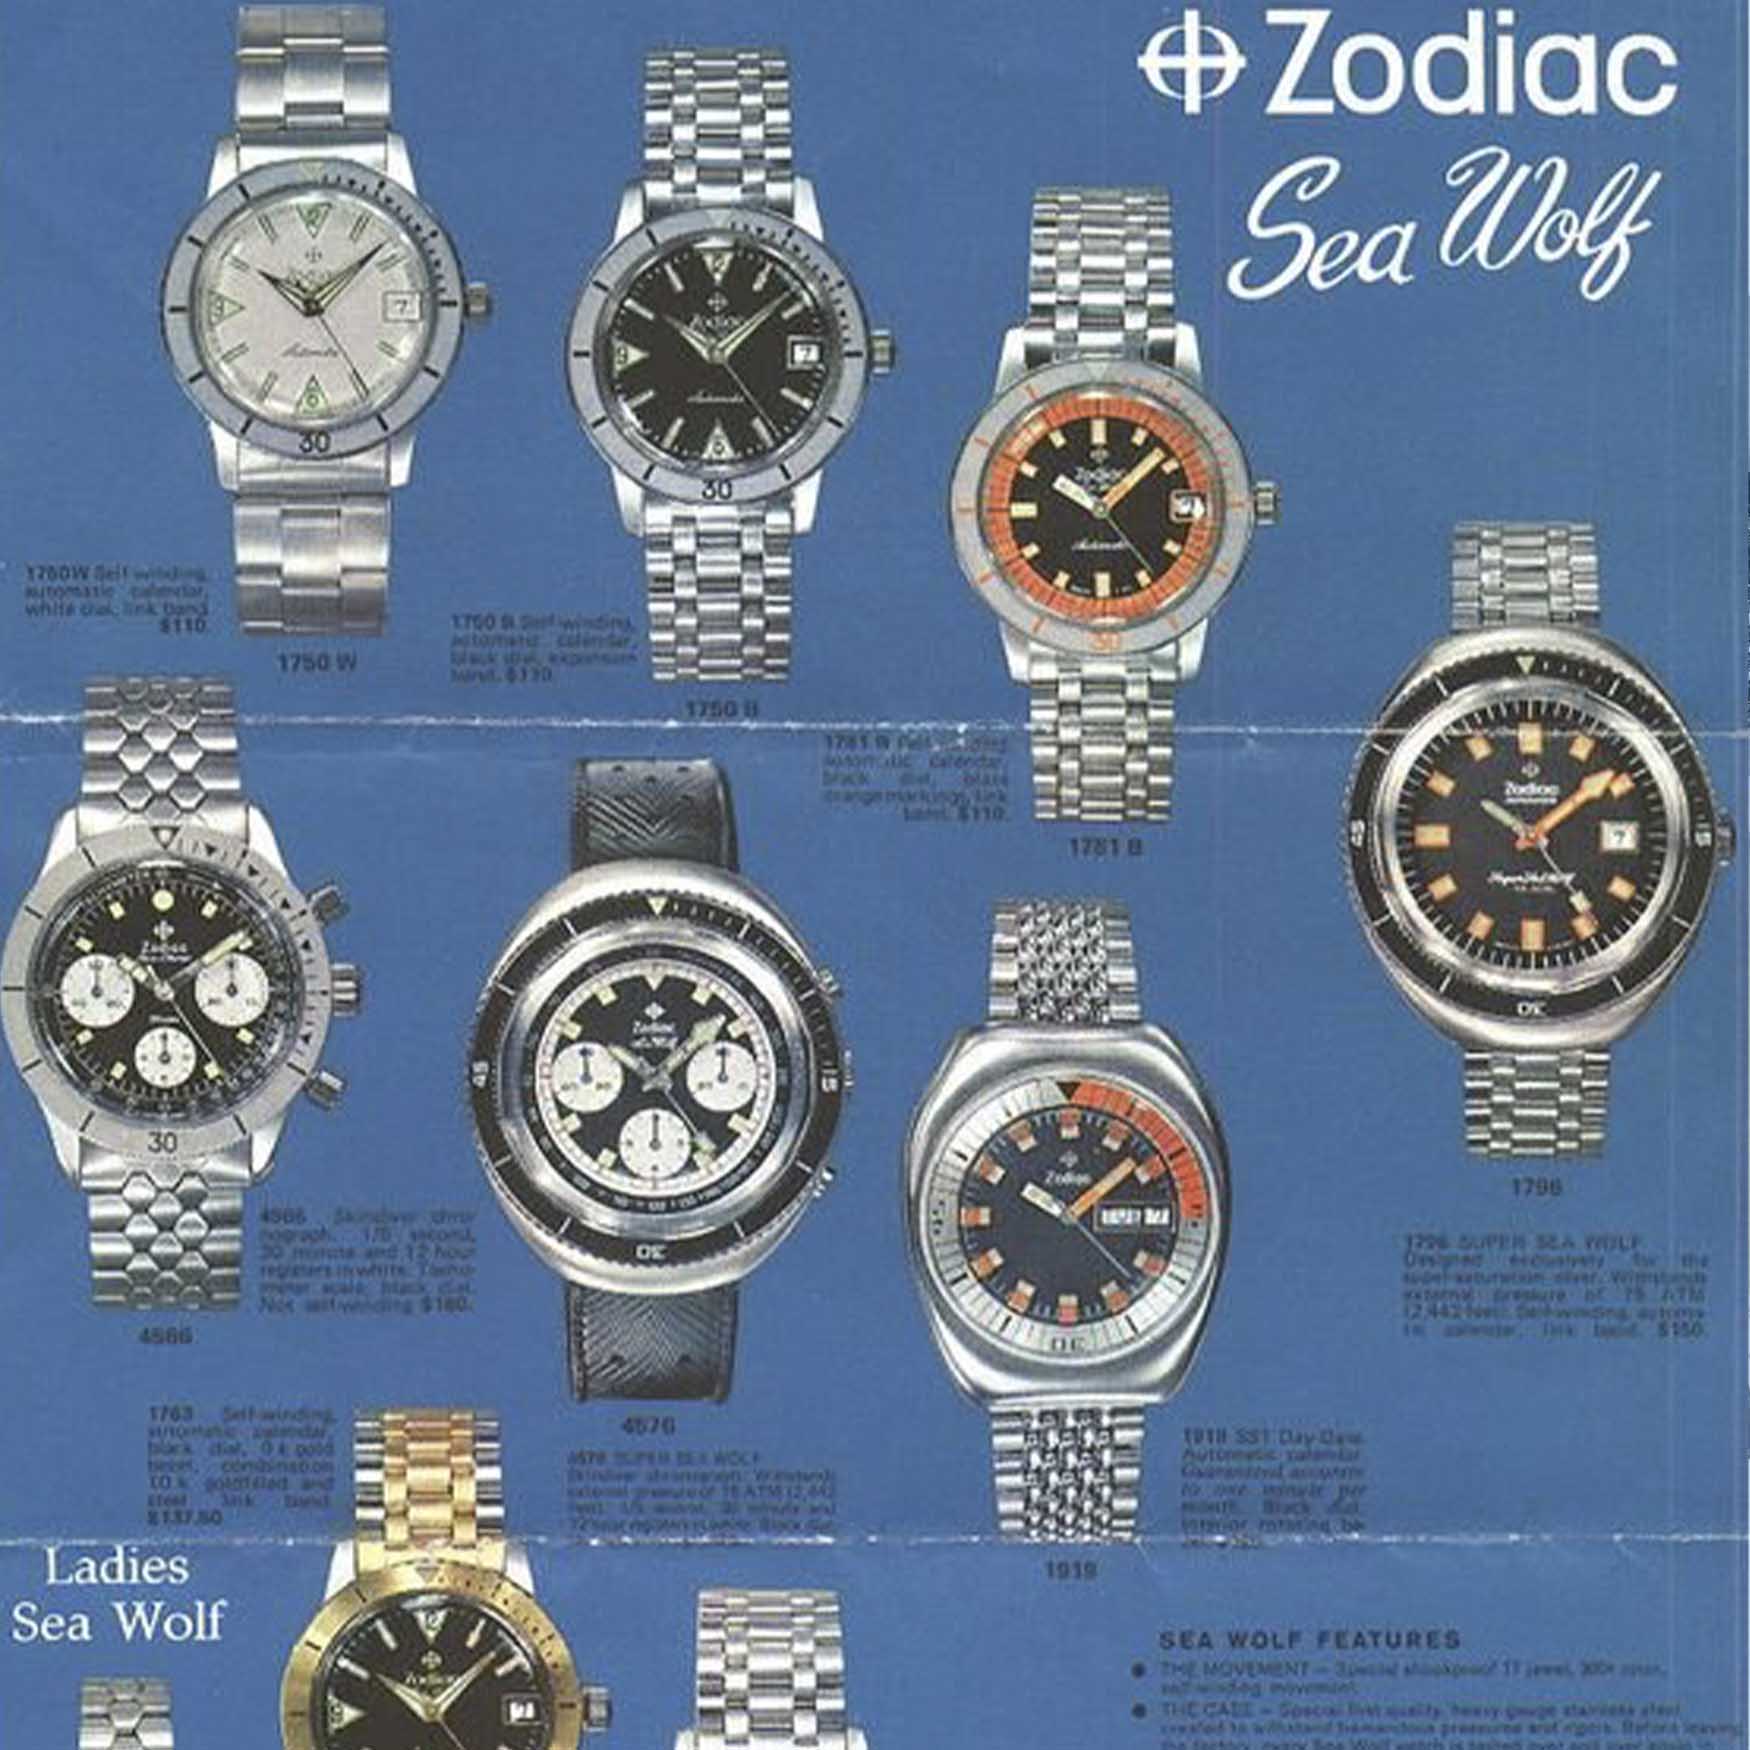 Zodiac Vintage 2